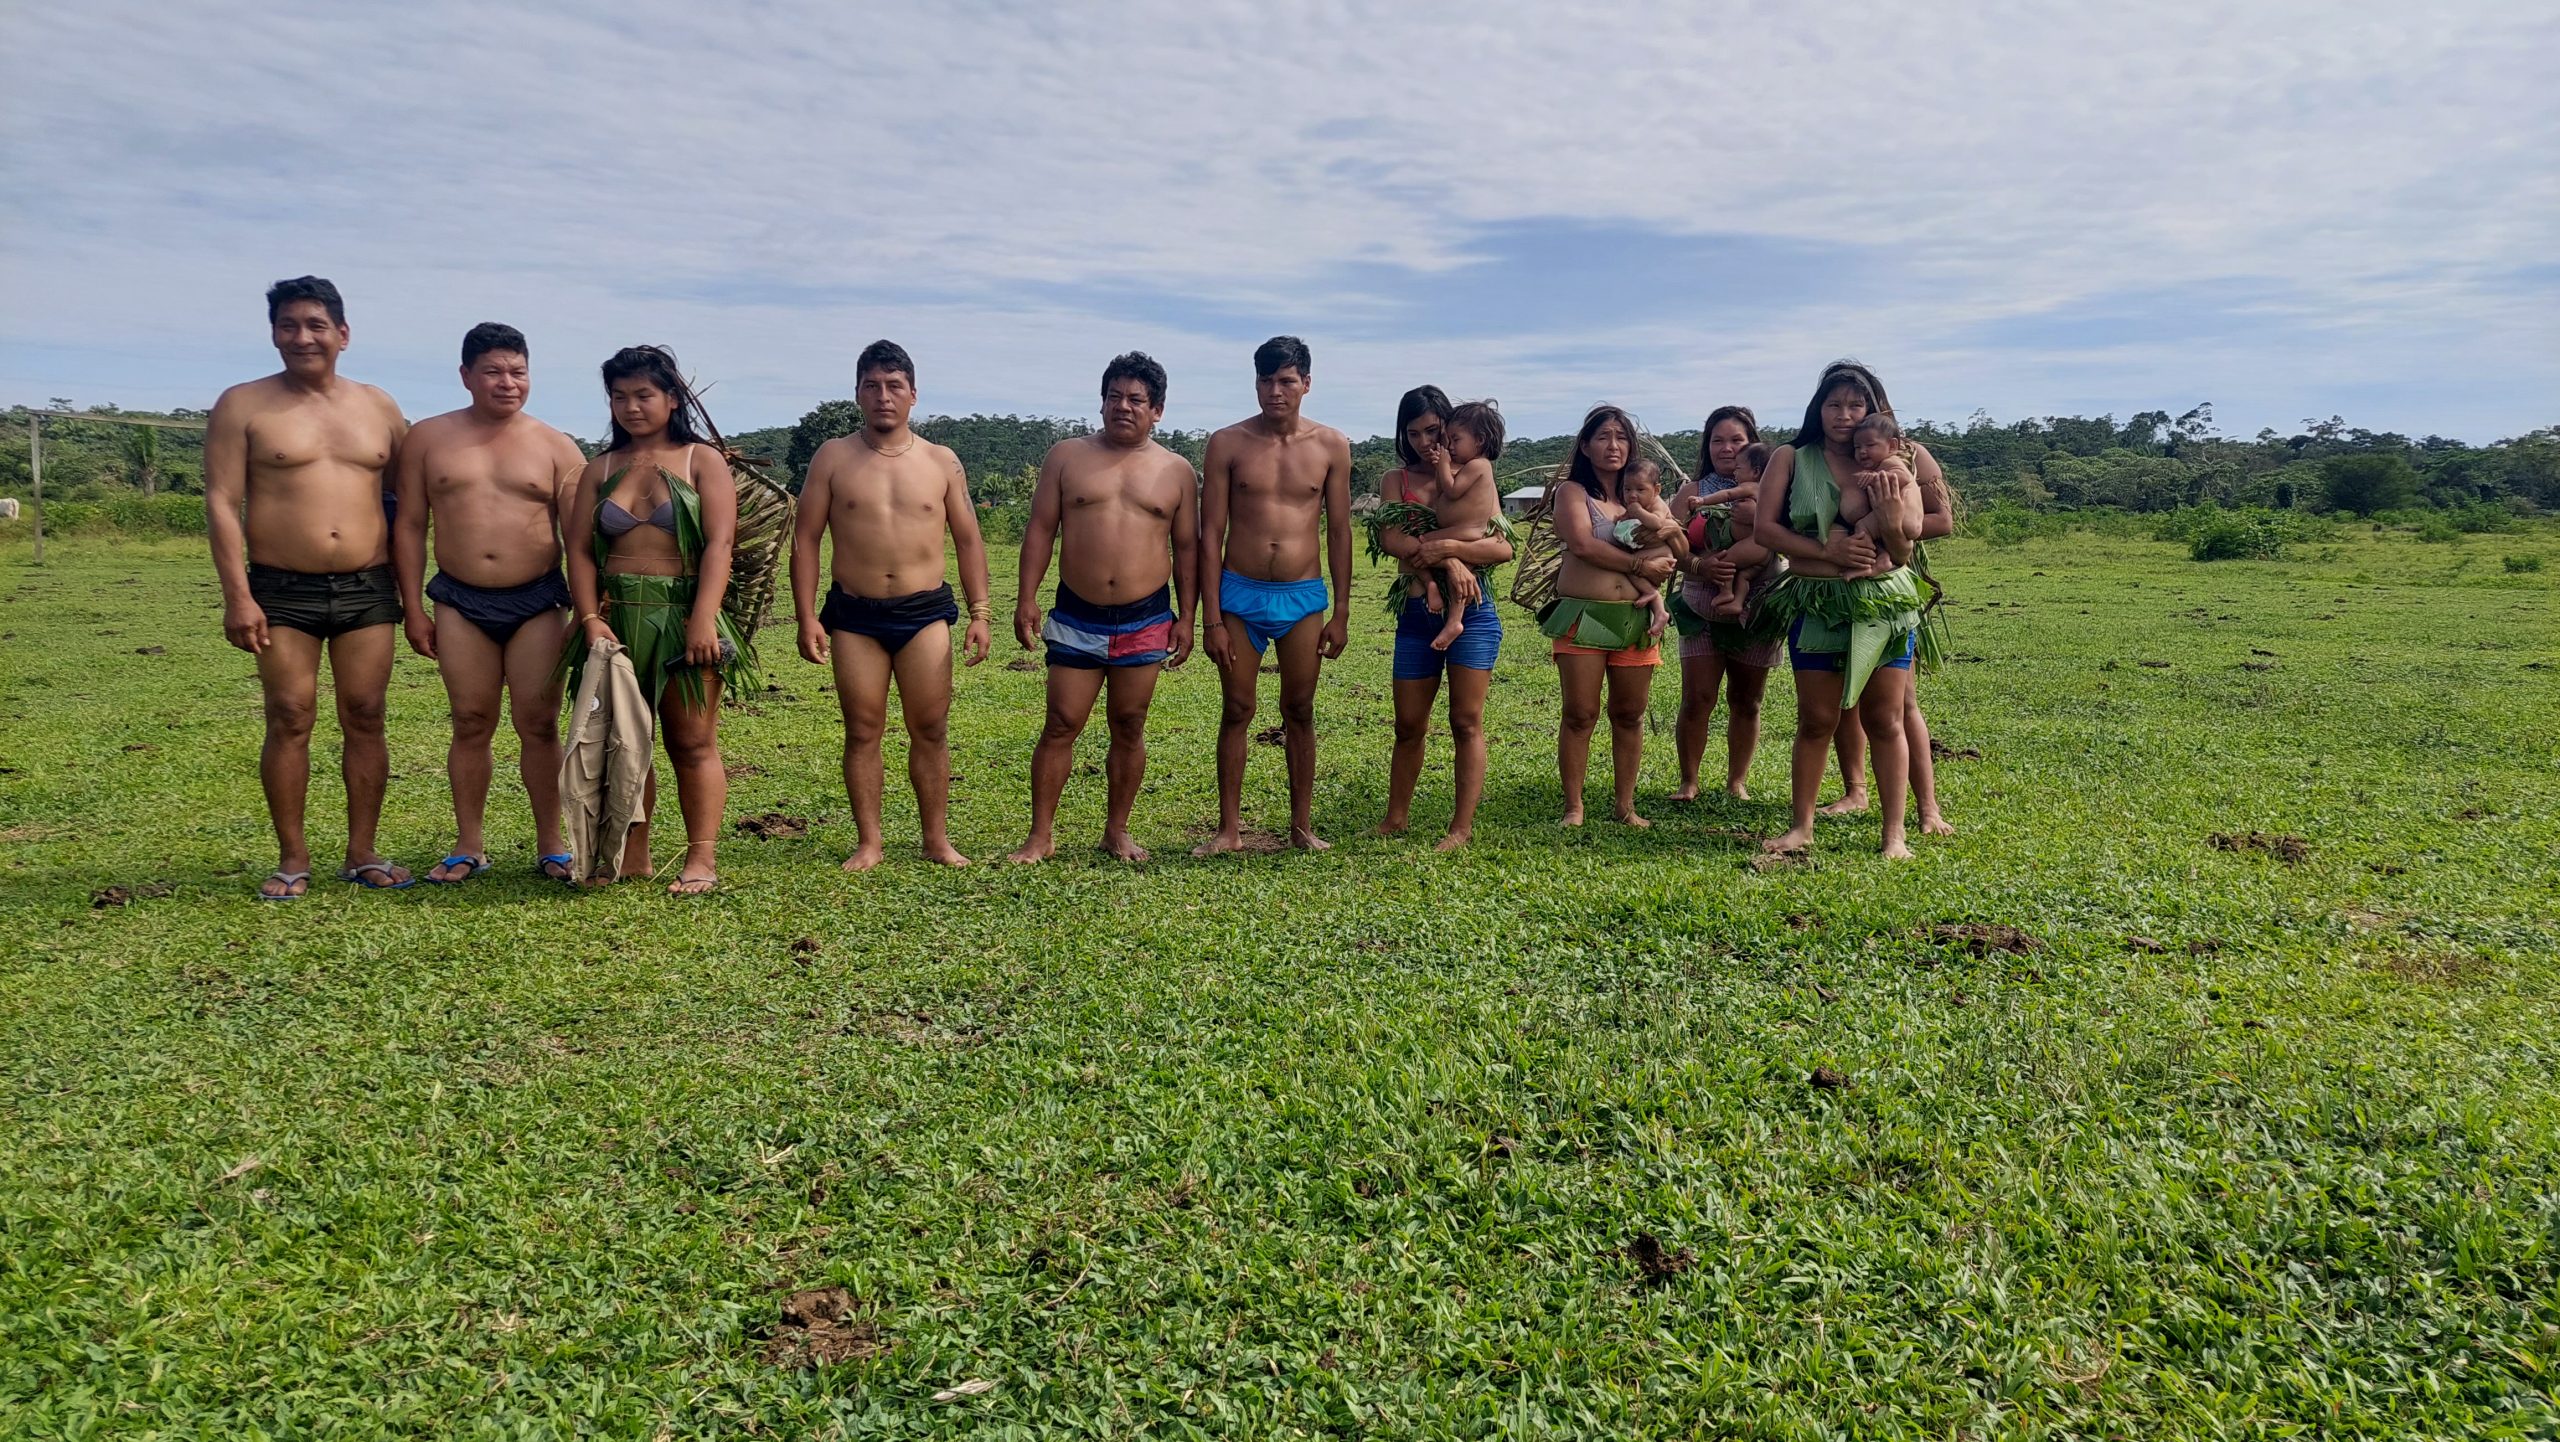 ACRE – Capacitação do PAA auxilia indígenas nas aldeias Formoso e